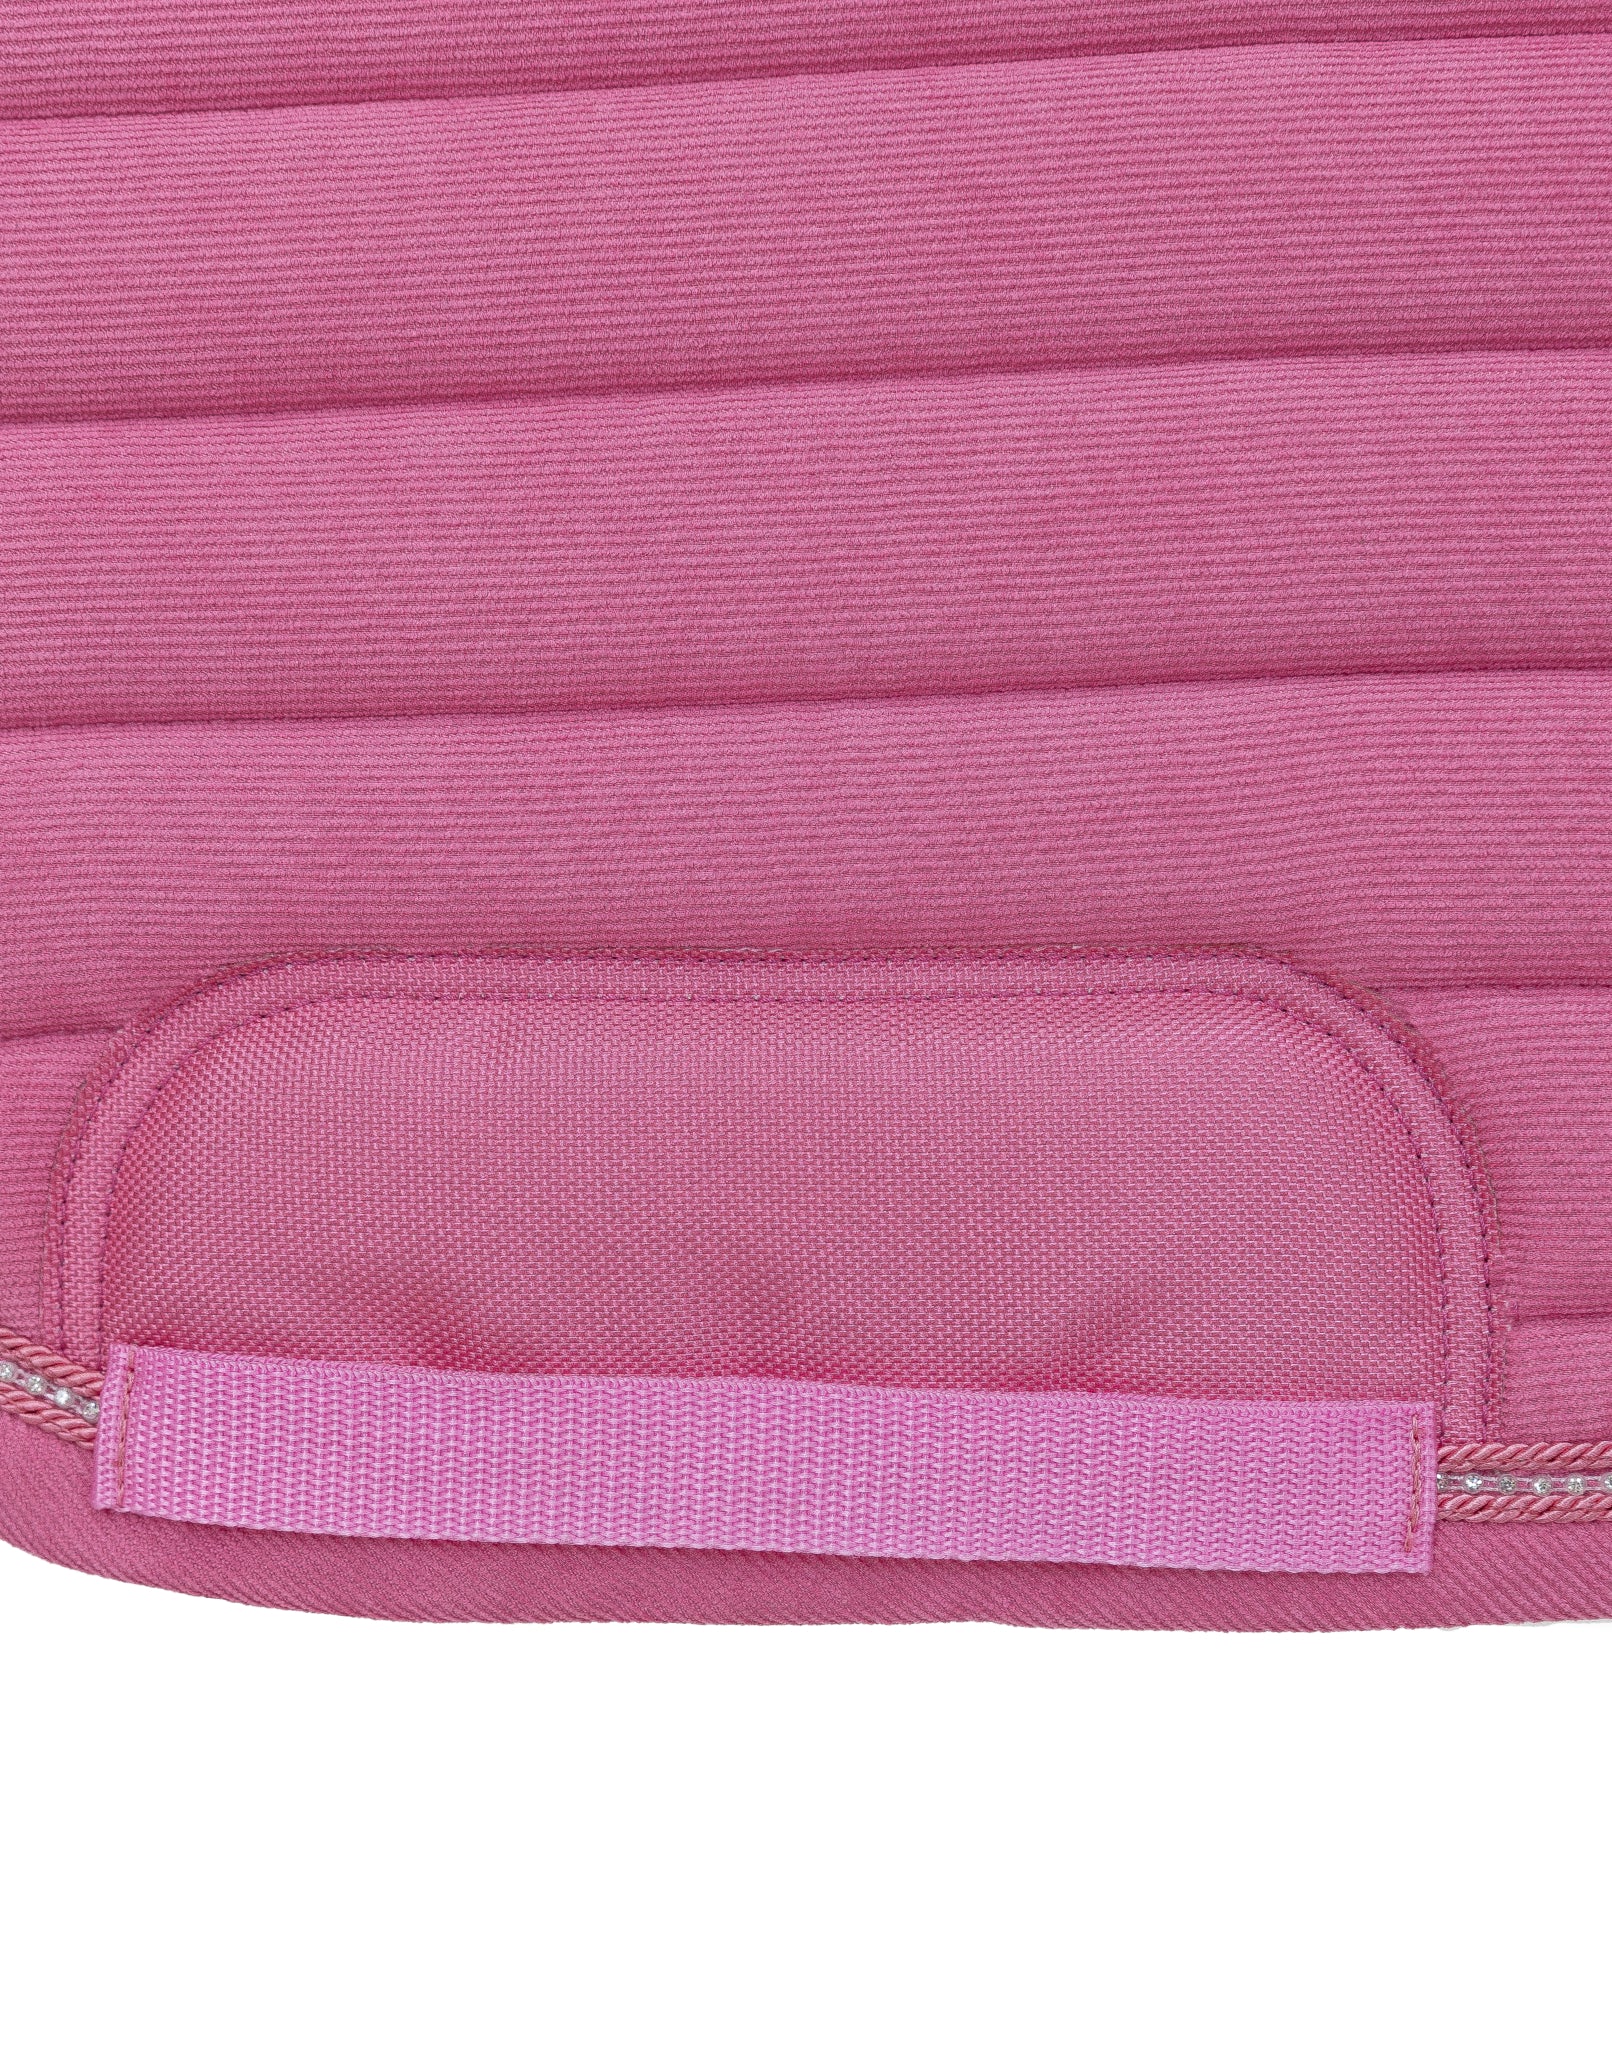 Malibu Pink - Dressage Saddle Pad